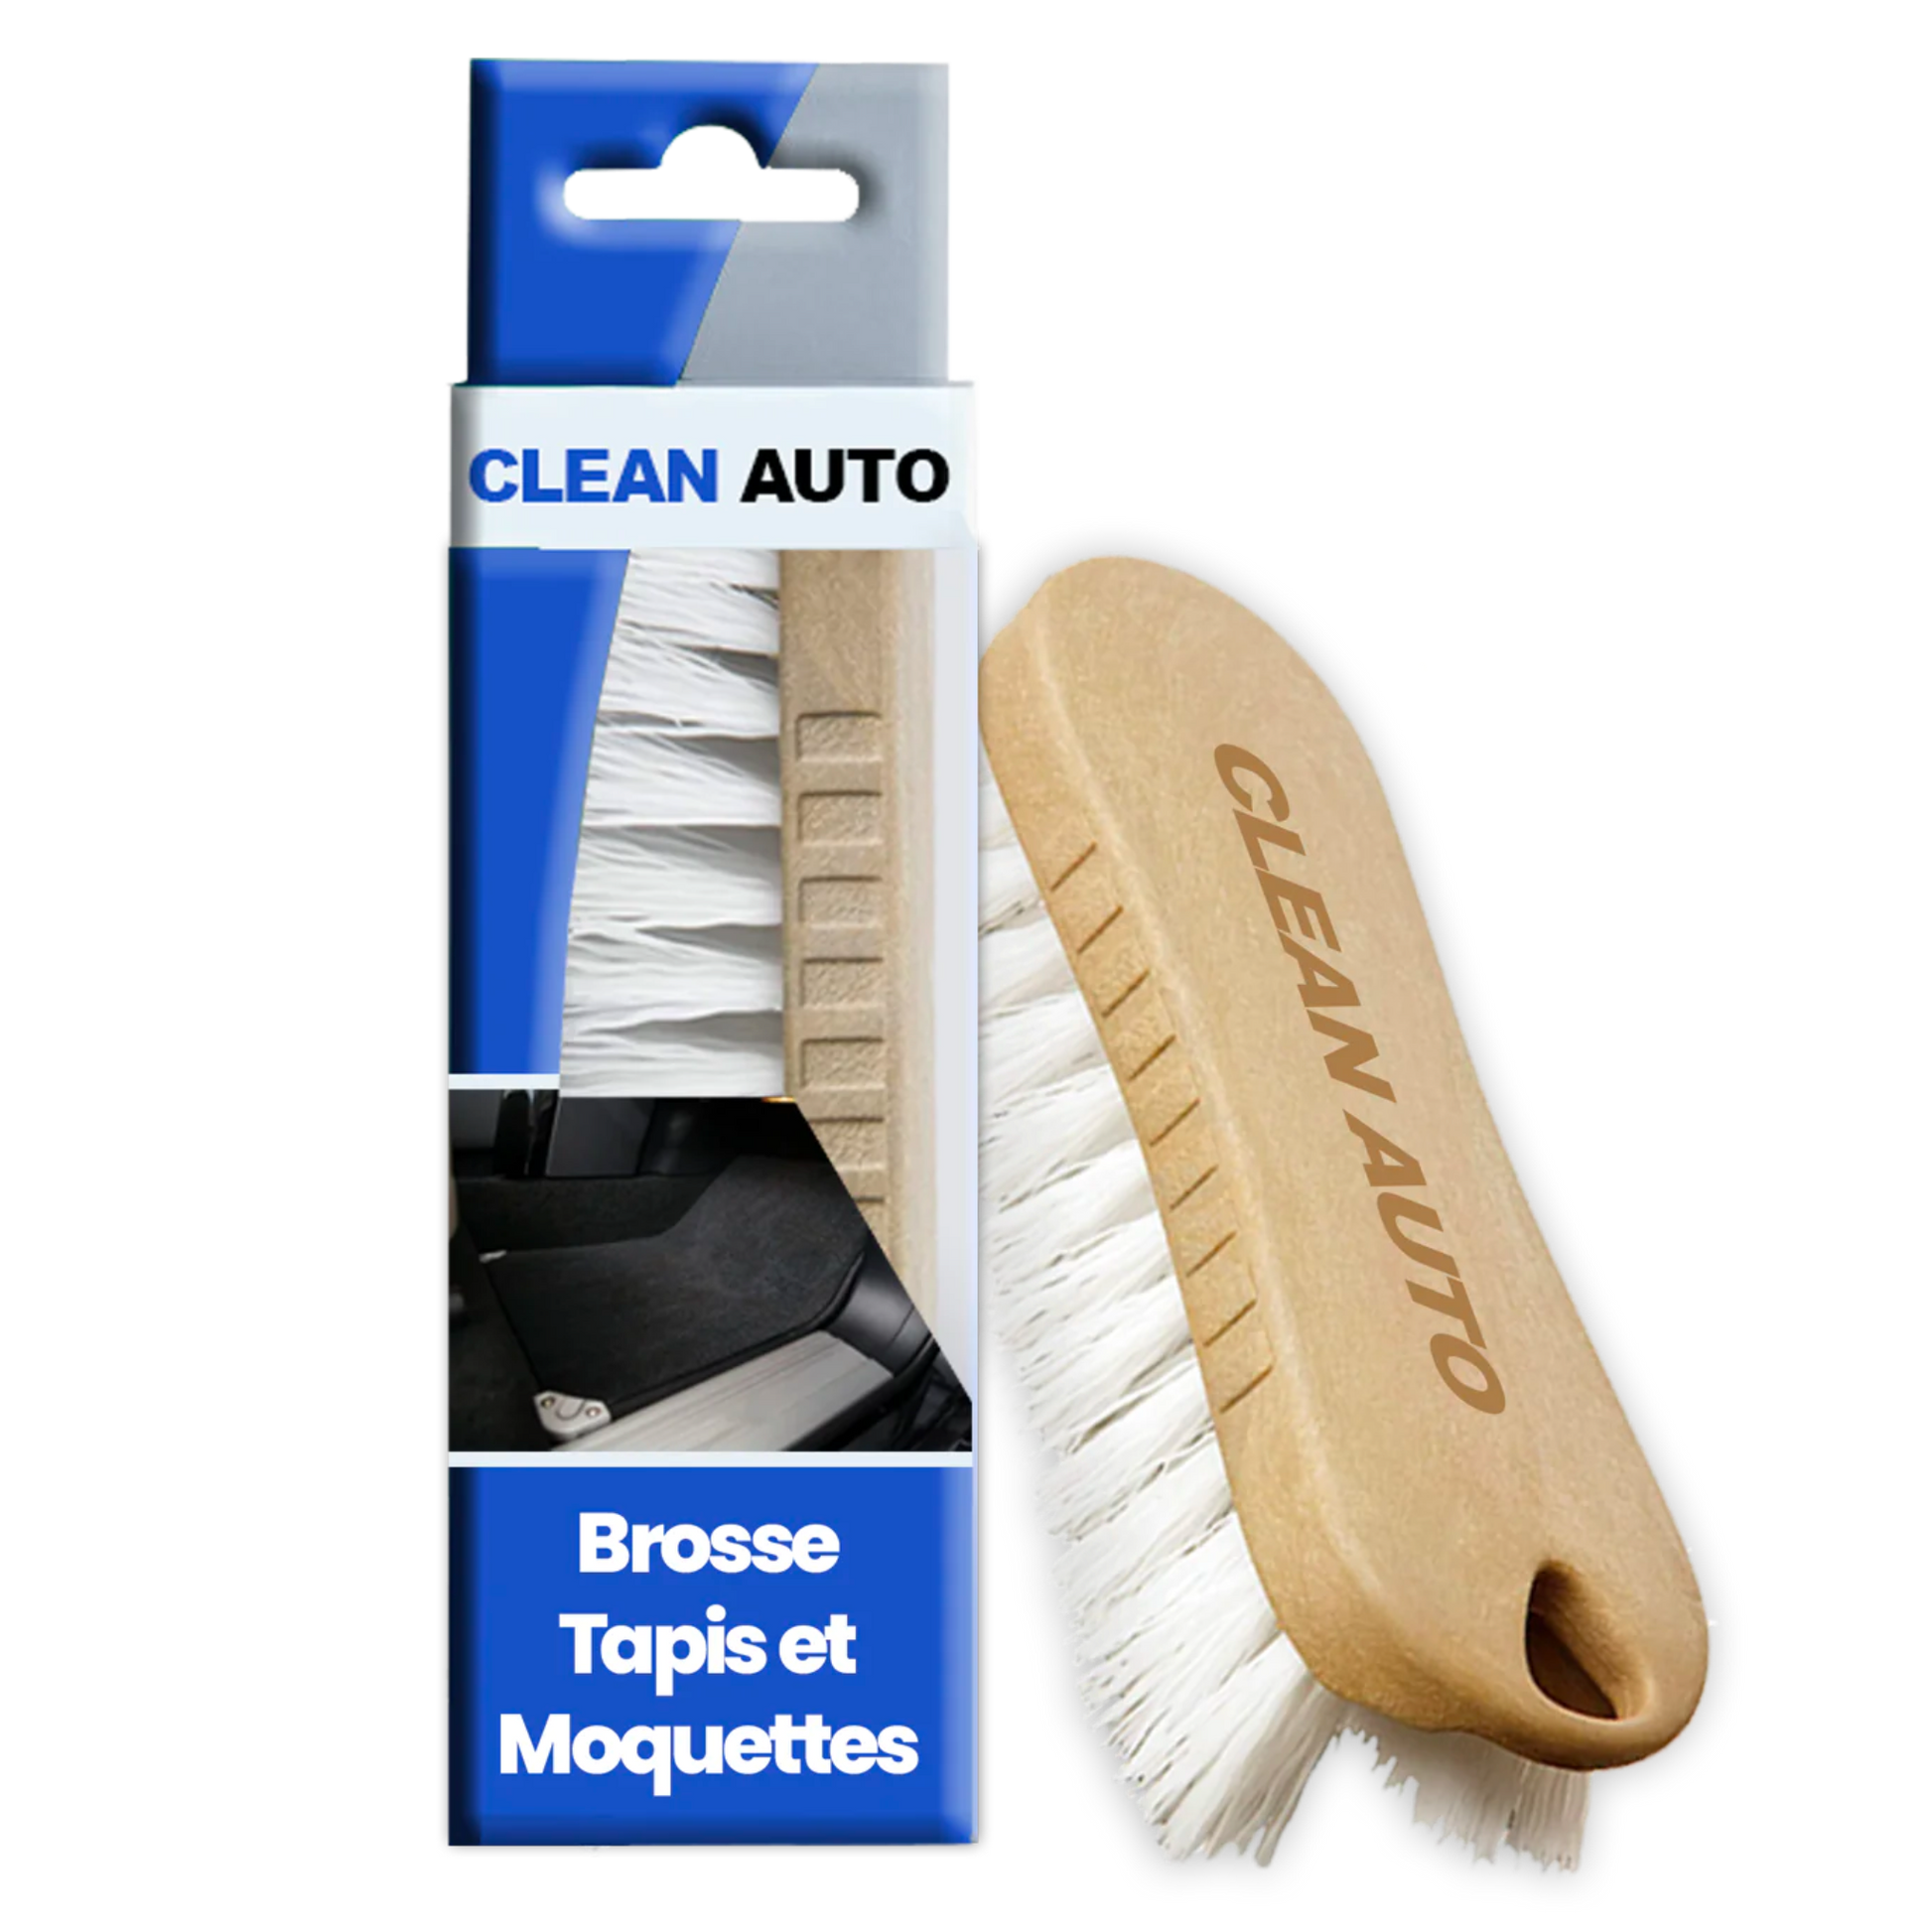 Brosse pour Tapis & Moquette ( Poils Durs ) Clean Auto - DETAILING VOITURE